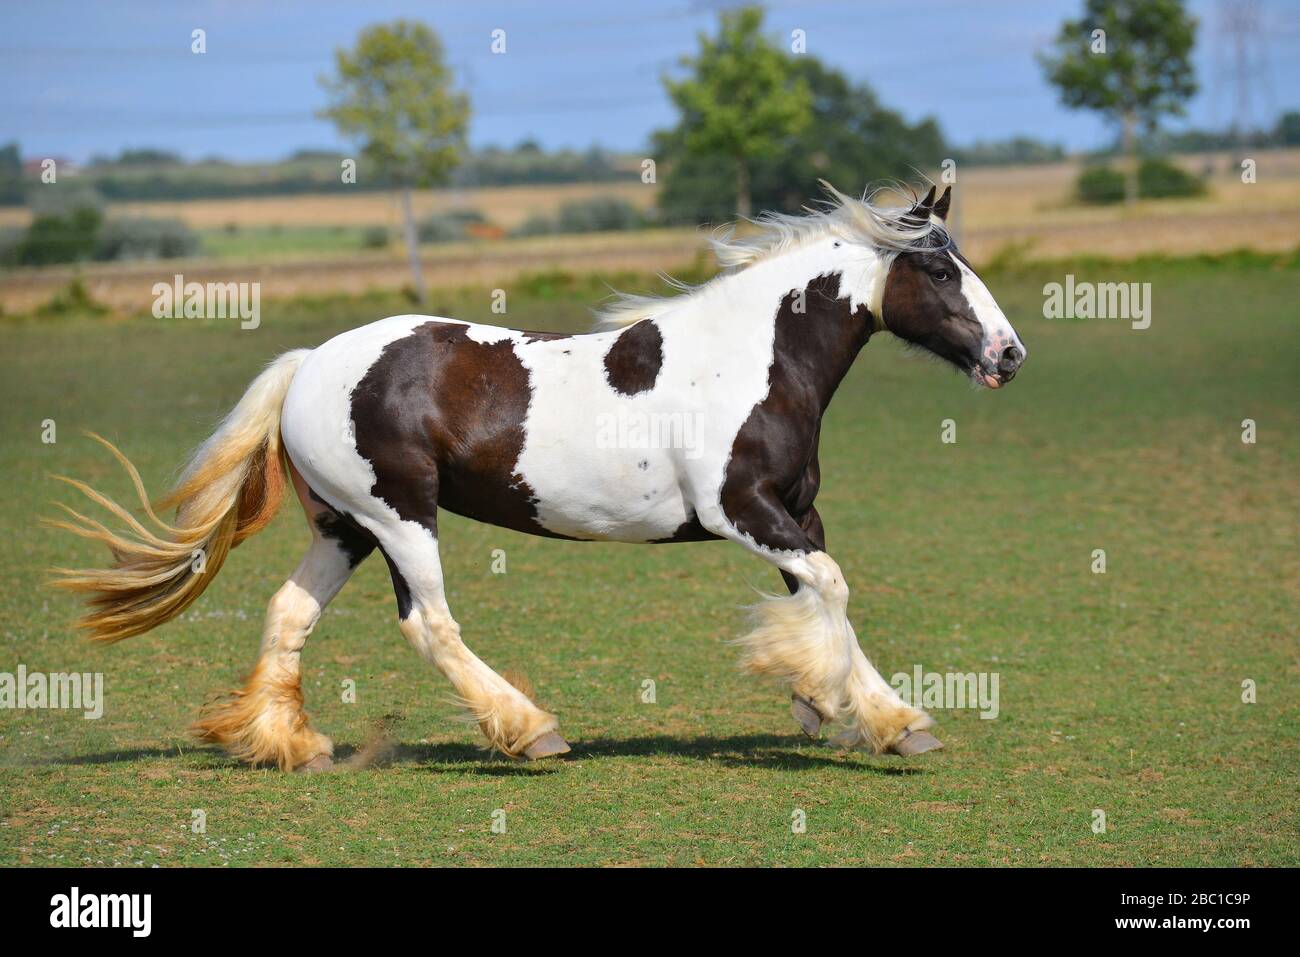 Pinto cavallo irlandese costata in galoppo sul campo. Orizzontale, vista laterale, in movimento. Foto Stock